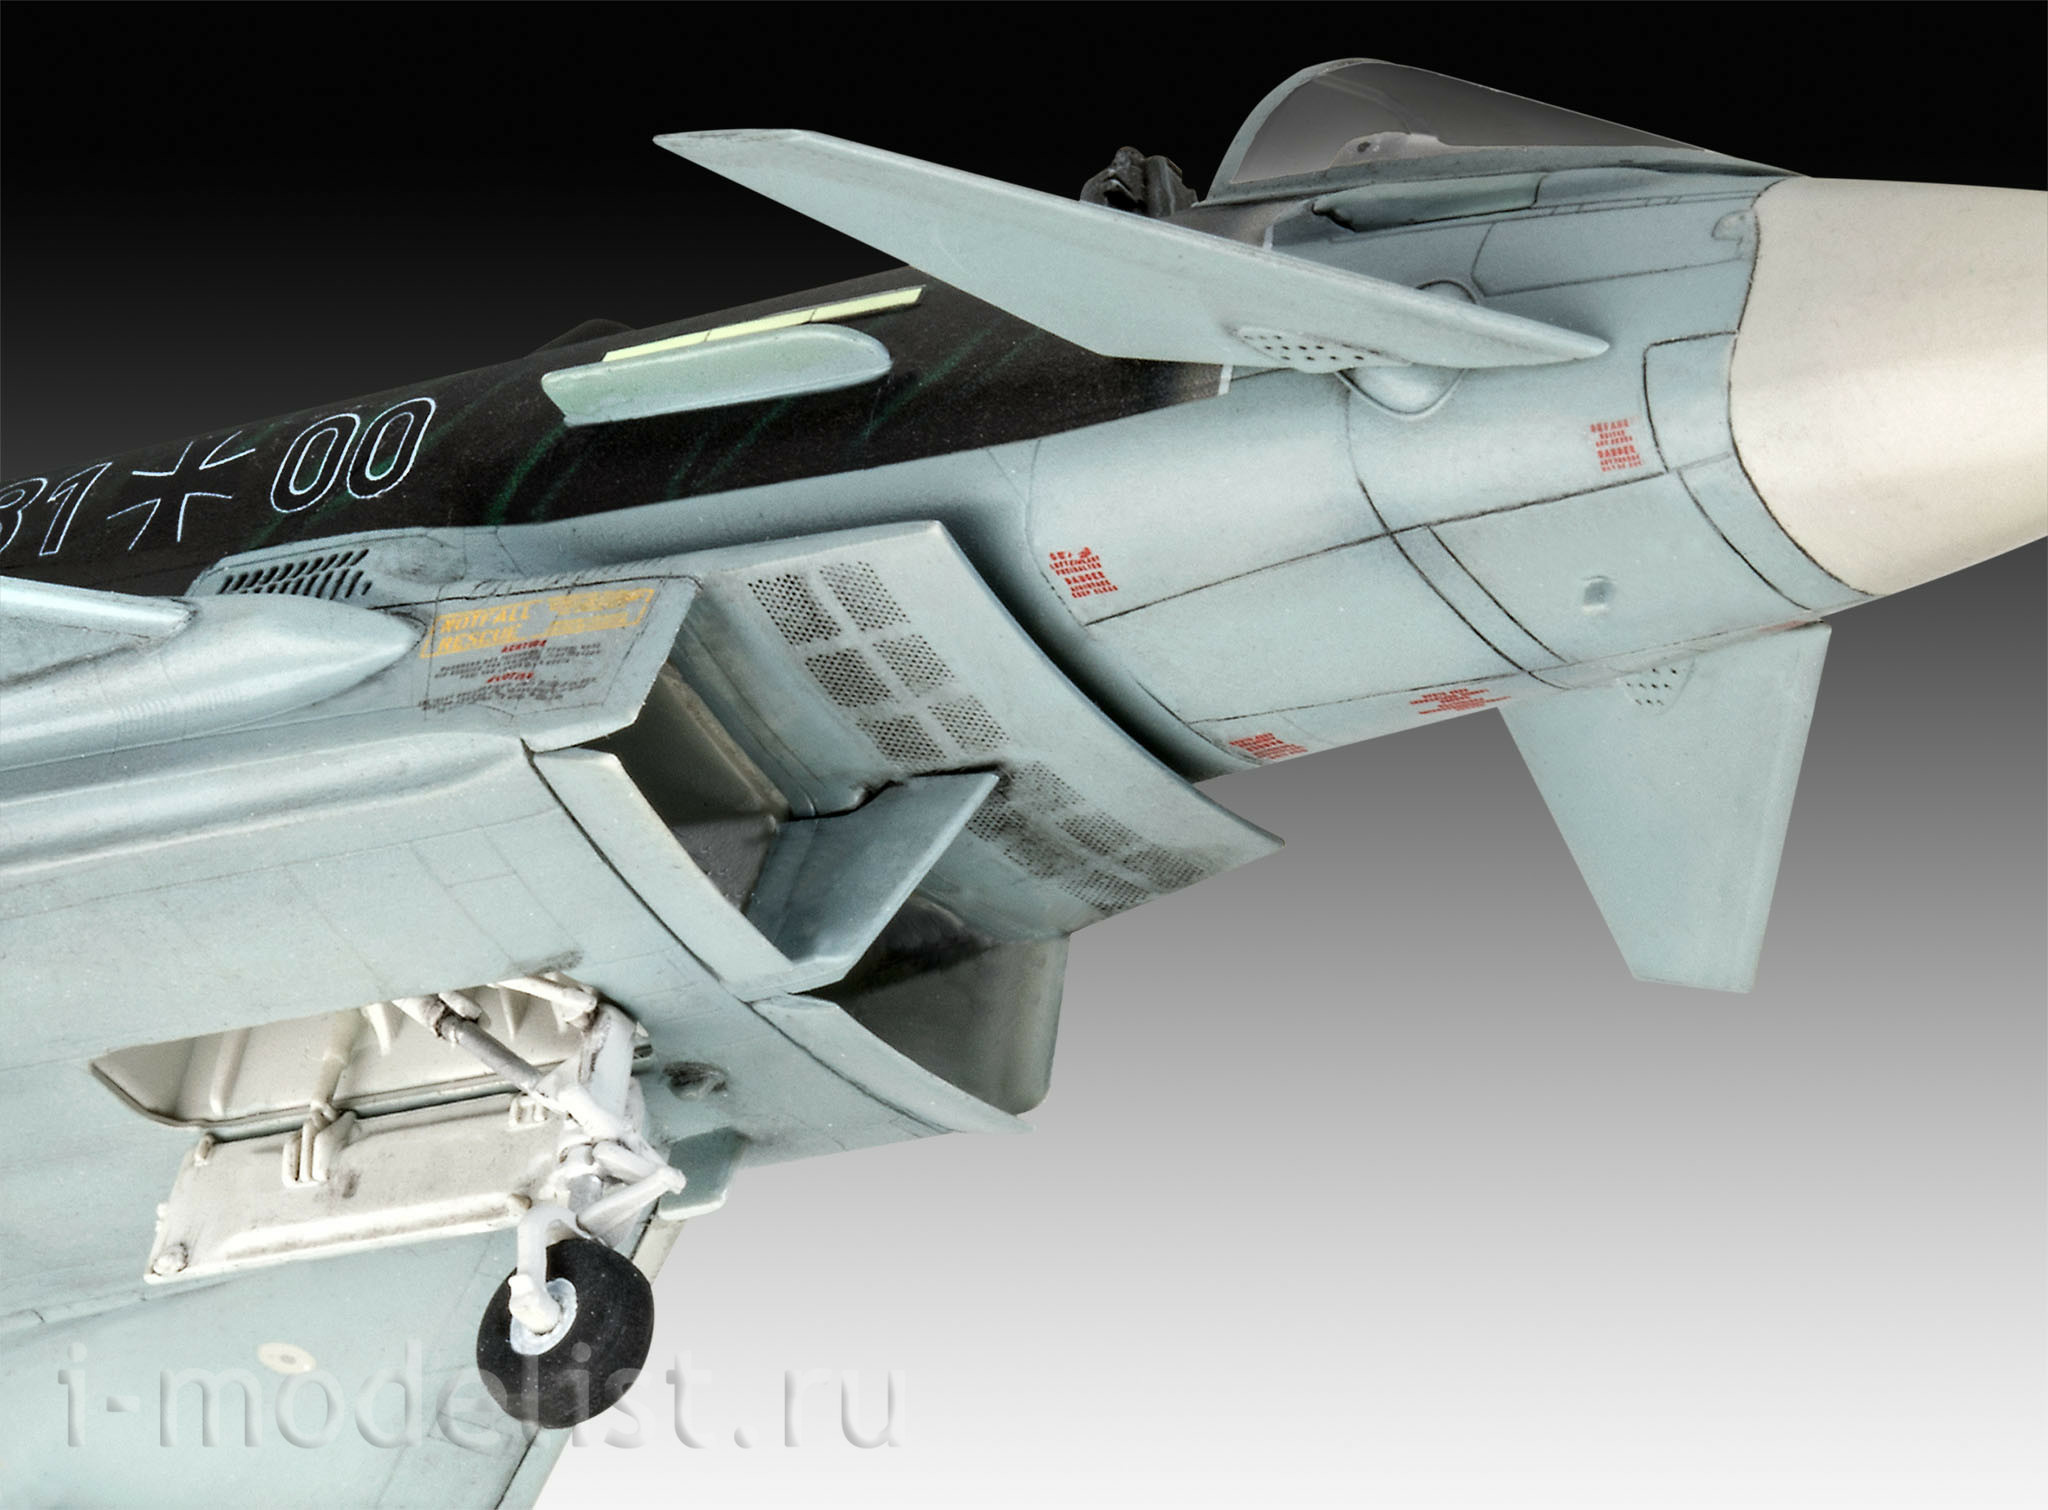 03884 Revell 1/72 Многоцелевой истребитель Eurofighter 